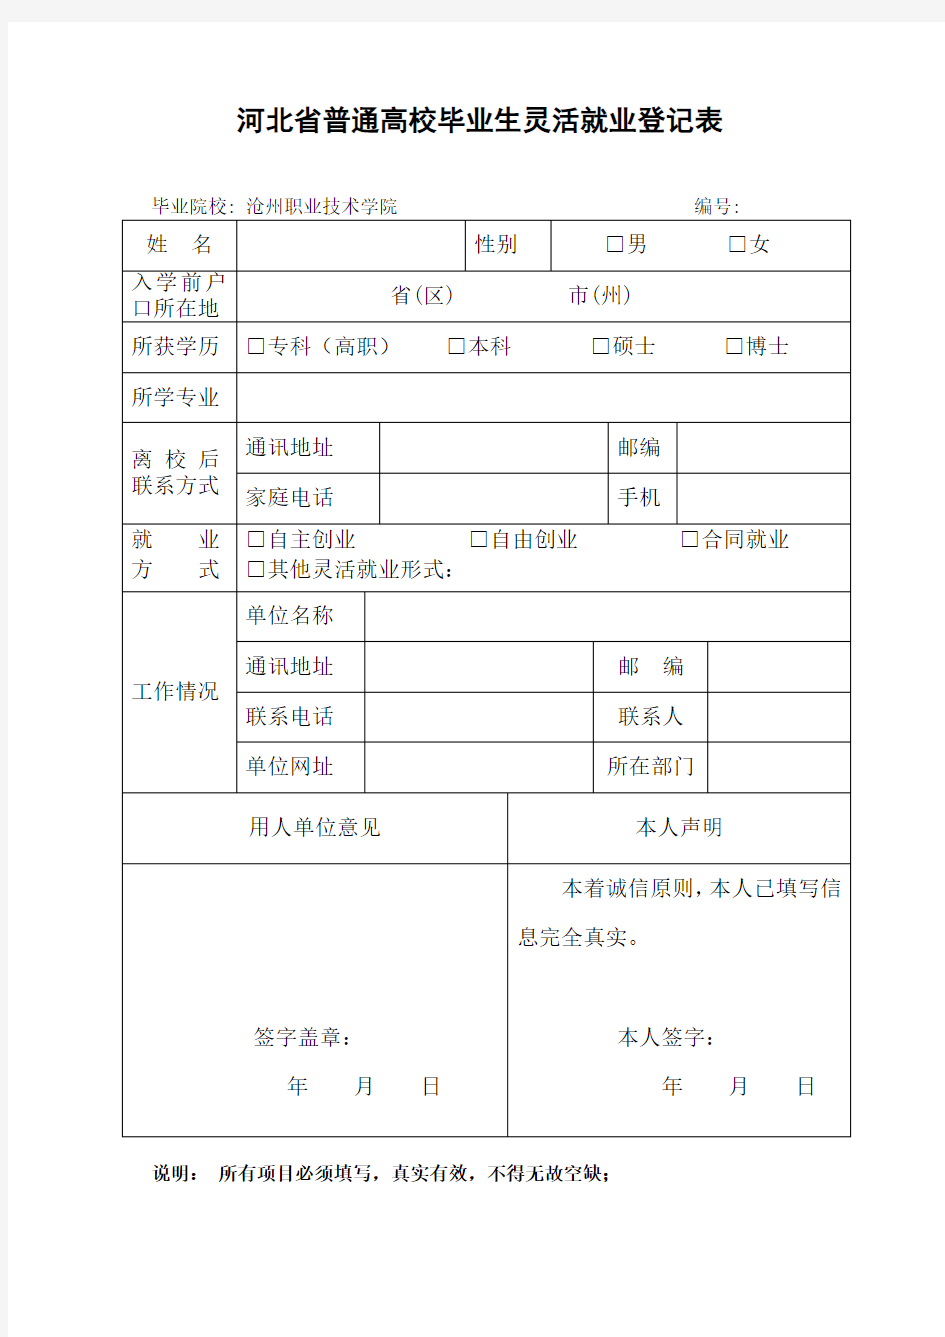 河北省普通高校毕业生灵活就业登记表